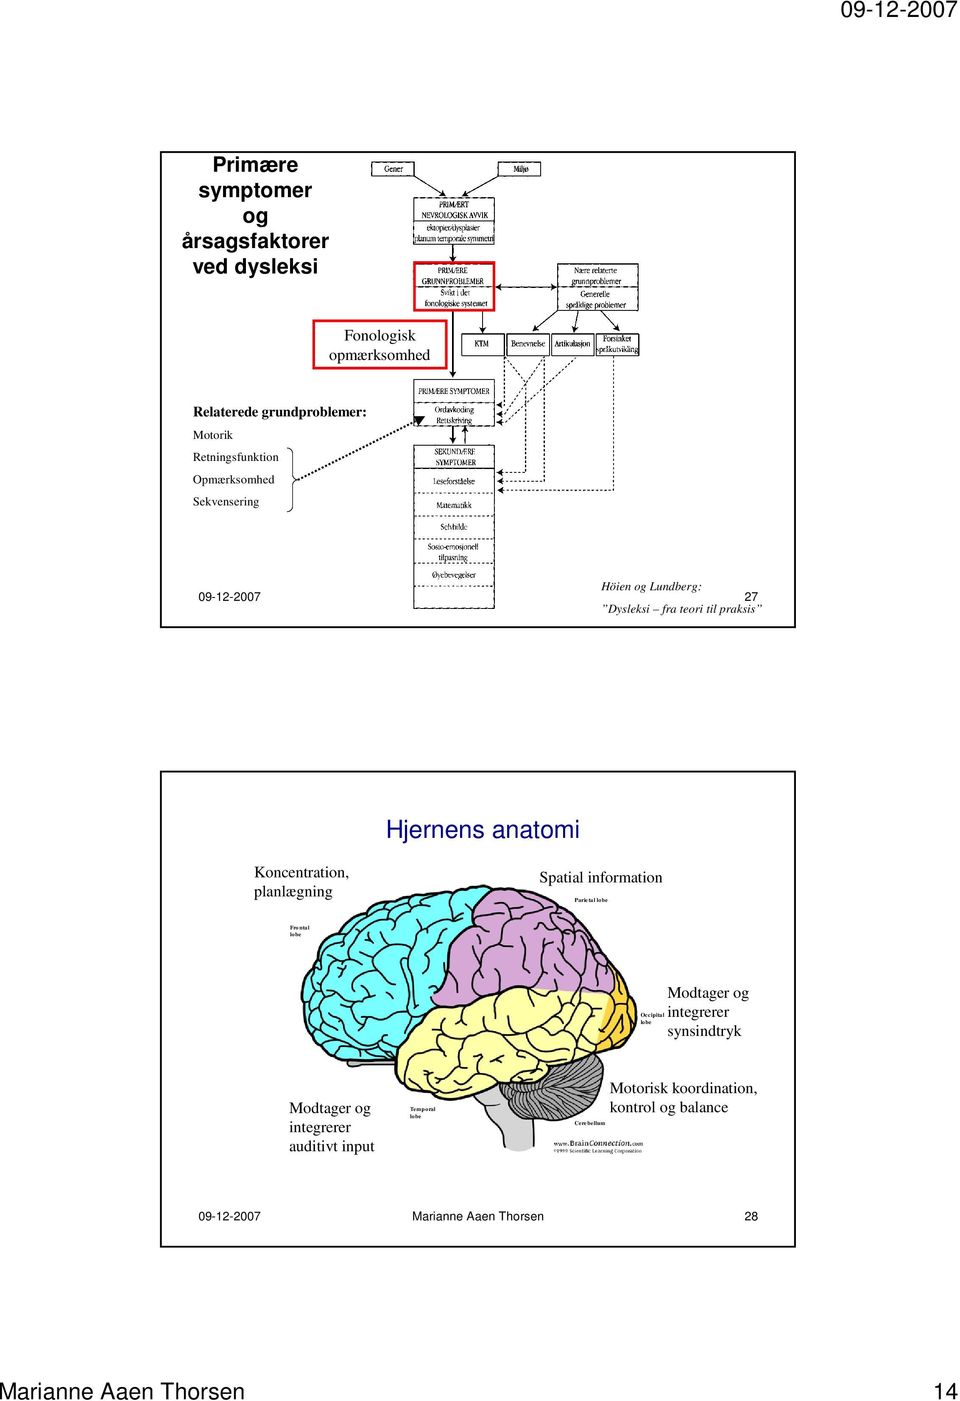 Koncentration, planlægning Spatial information Parietal lobe Fro ntal lobe Occipital lobe Modtager og integrerer synsindtryk Modtager